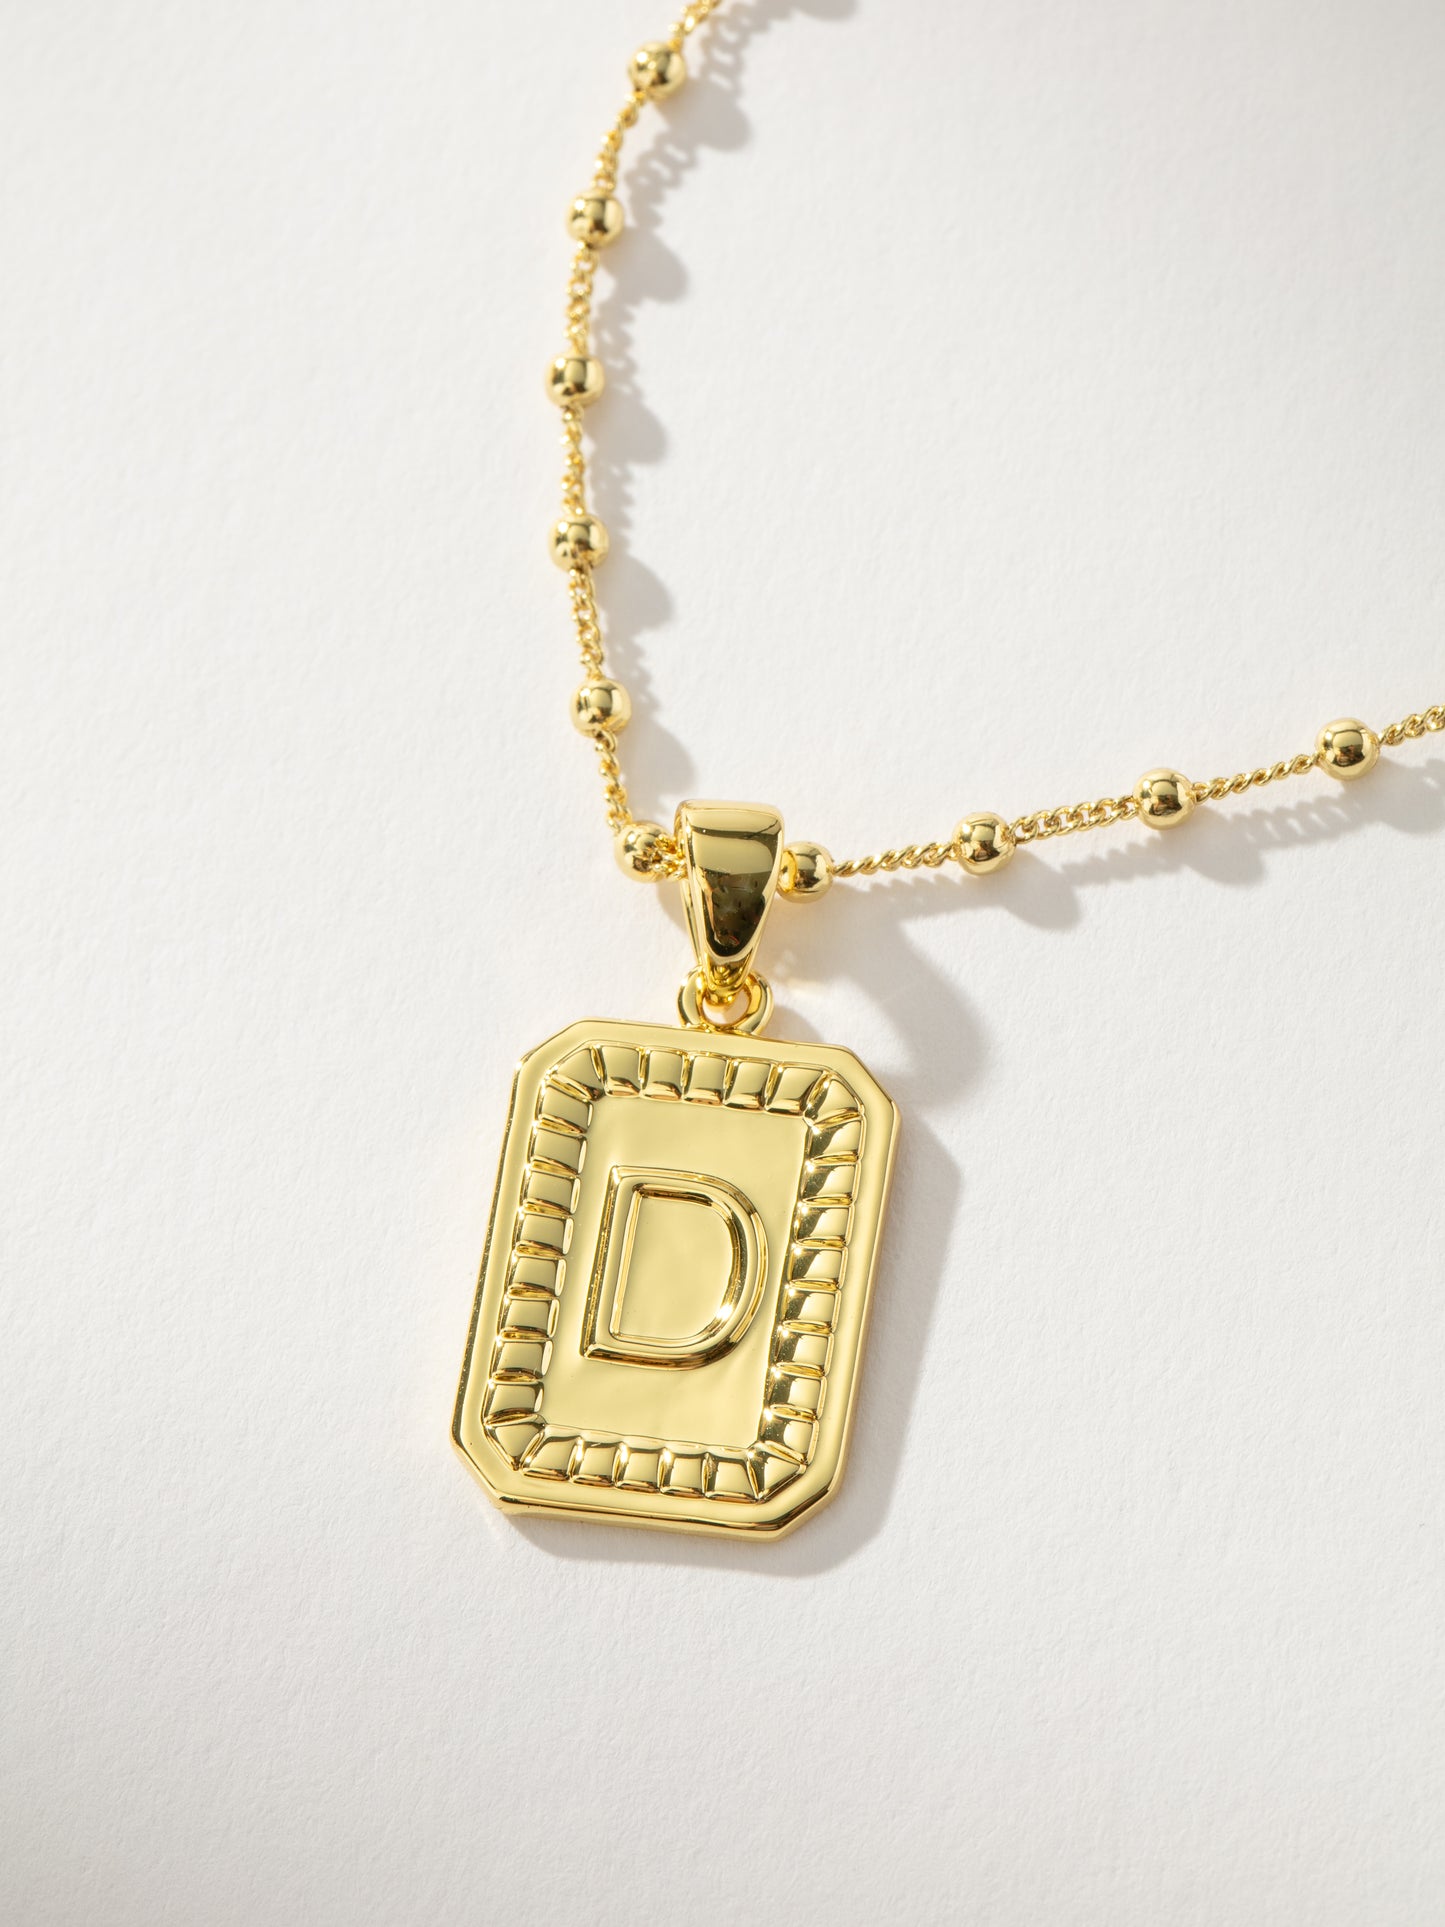 Sur Necklace | Gold D | Product Image | Uncommon James